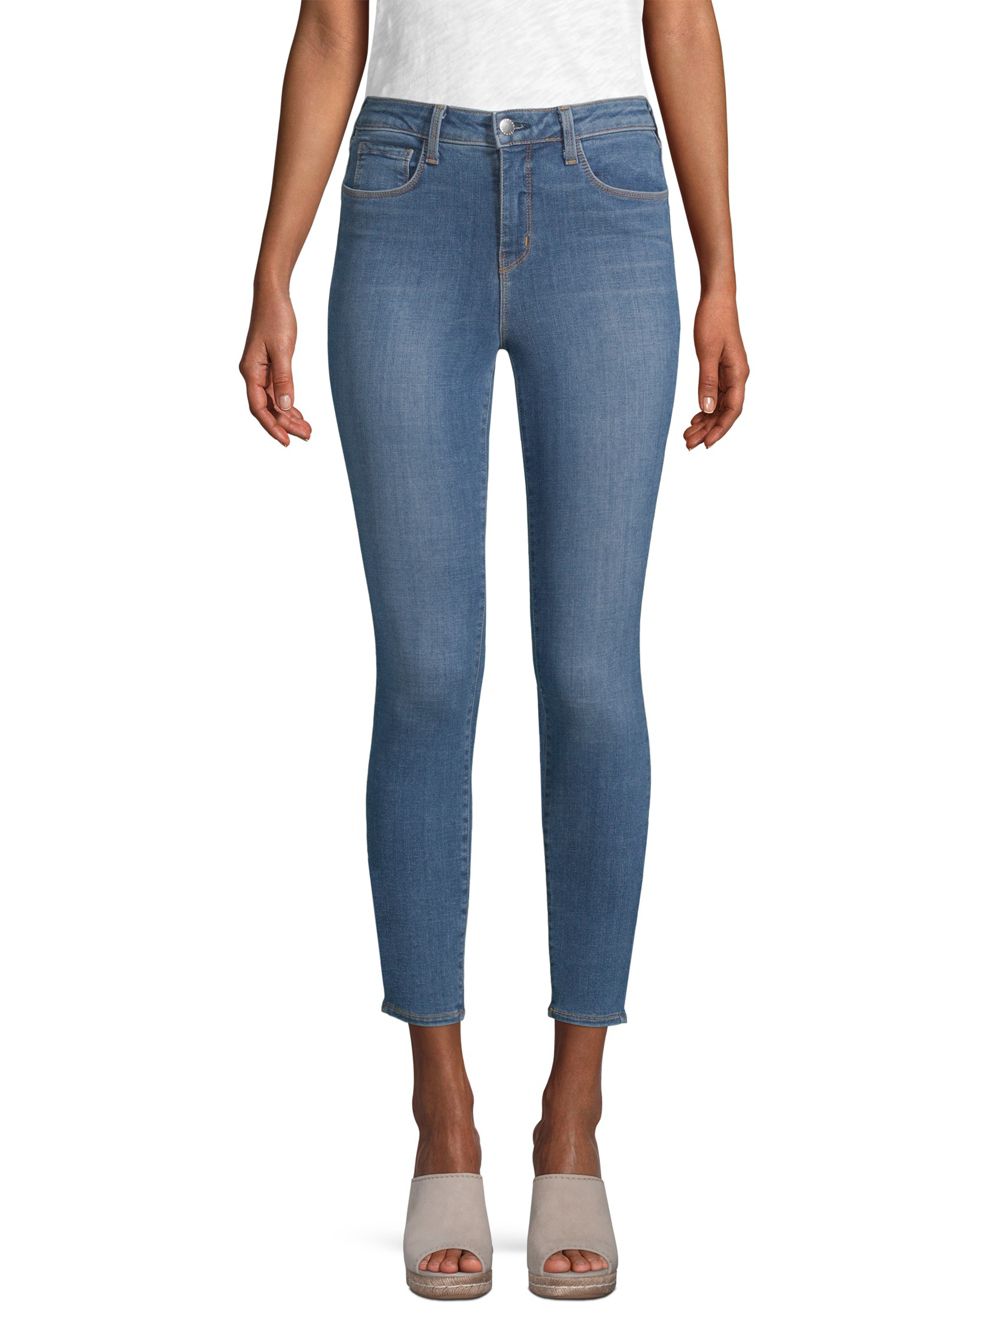 Эластичные джинсы-скинни до щиколотки Margot со средней посадкой L'AGENCE, винтаж